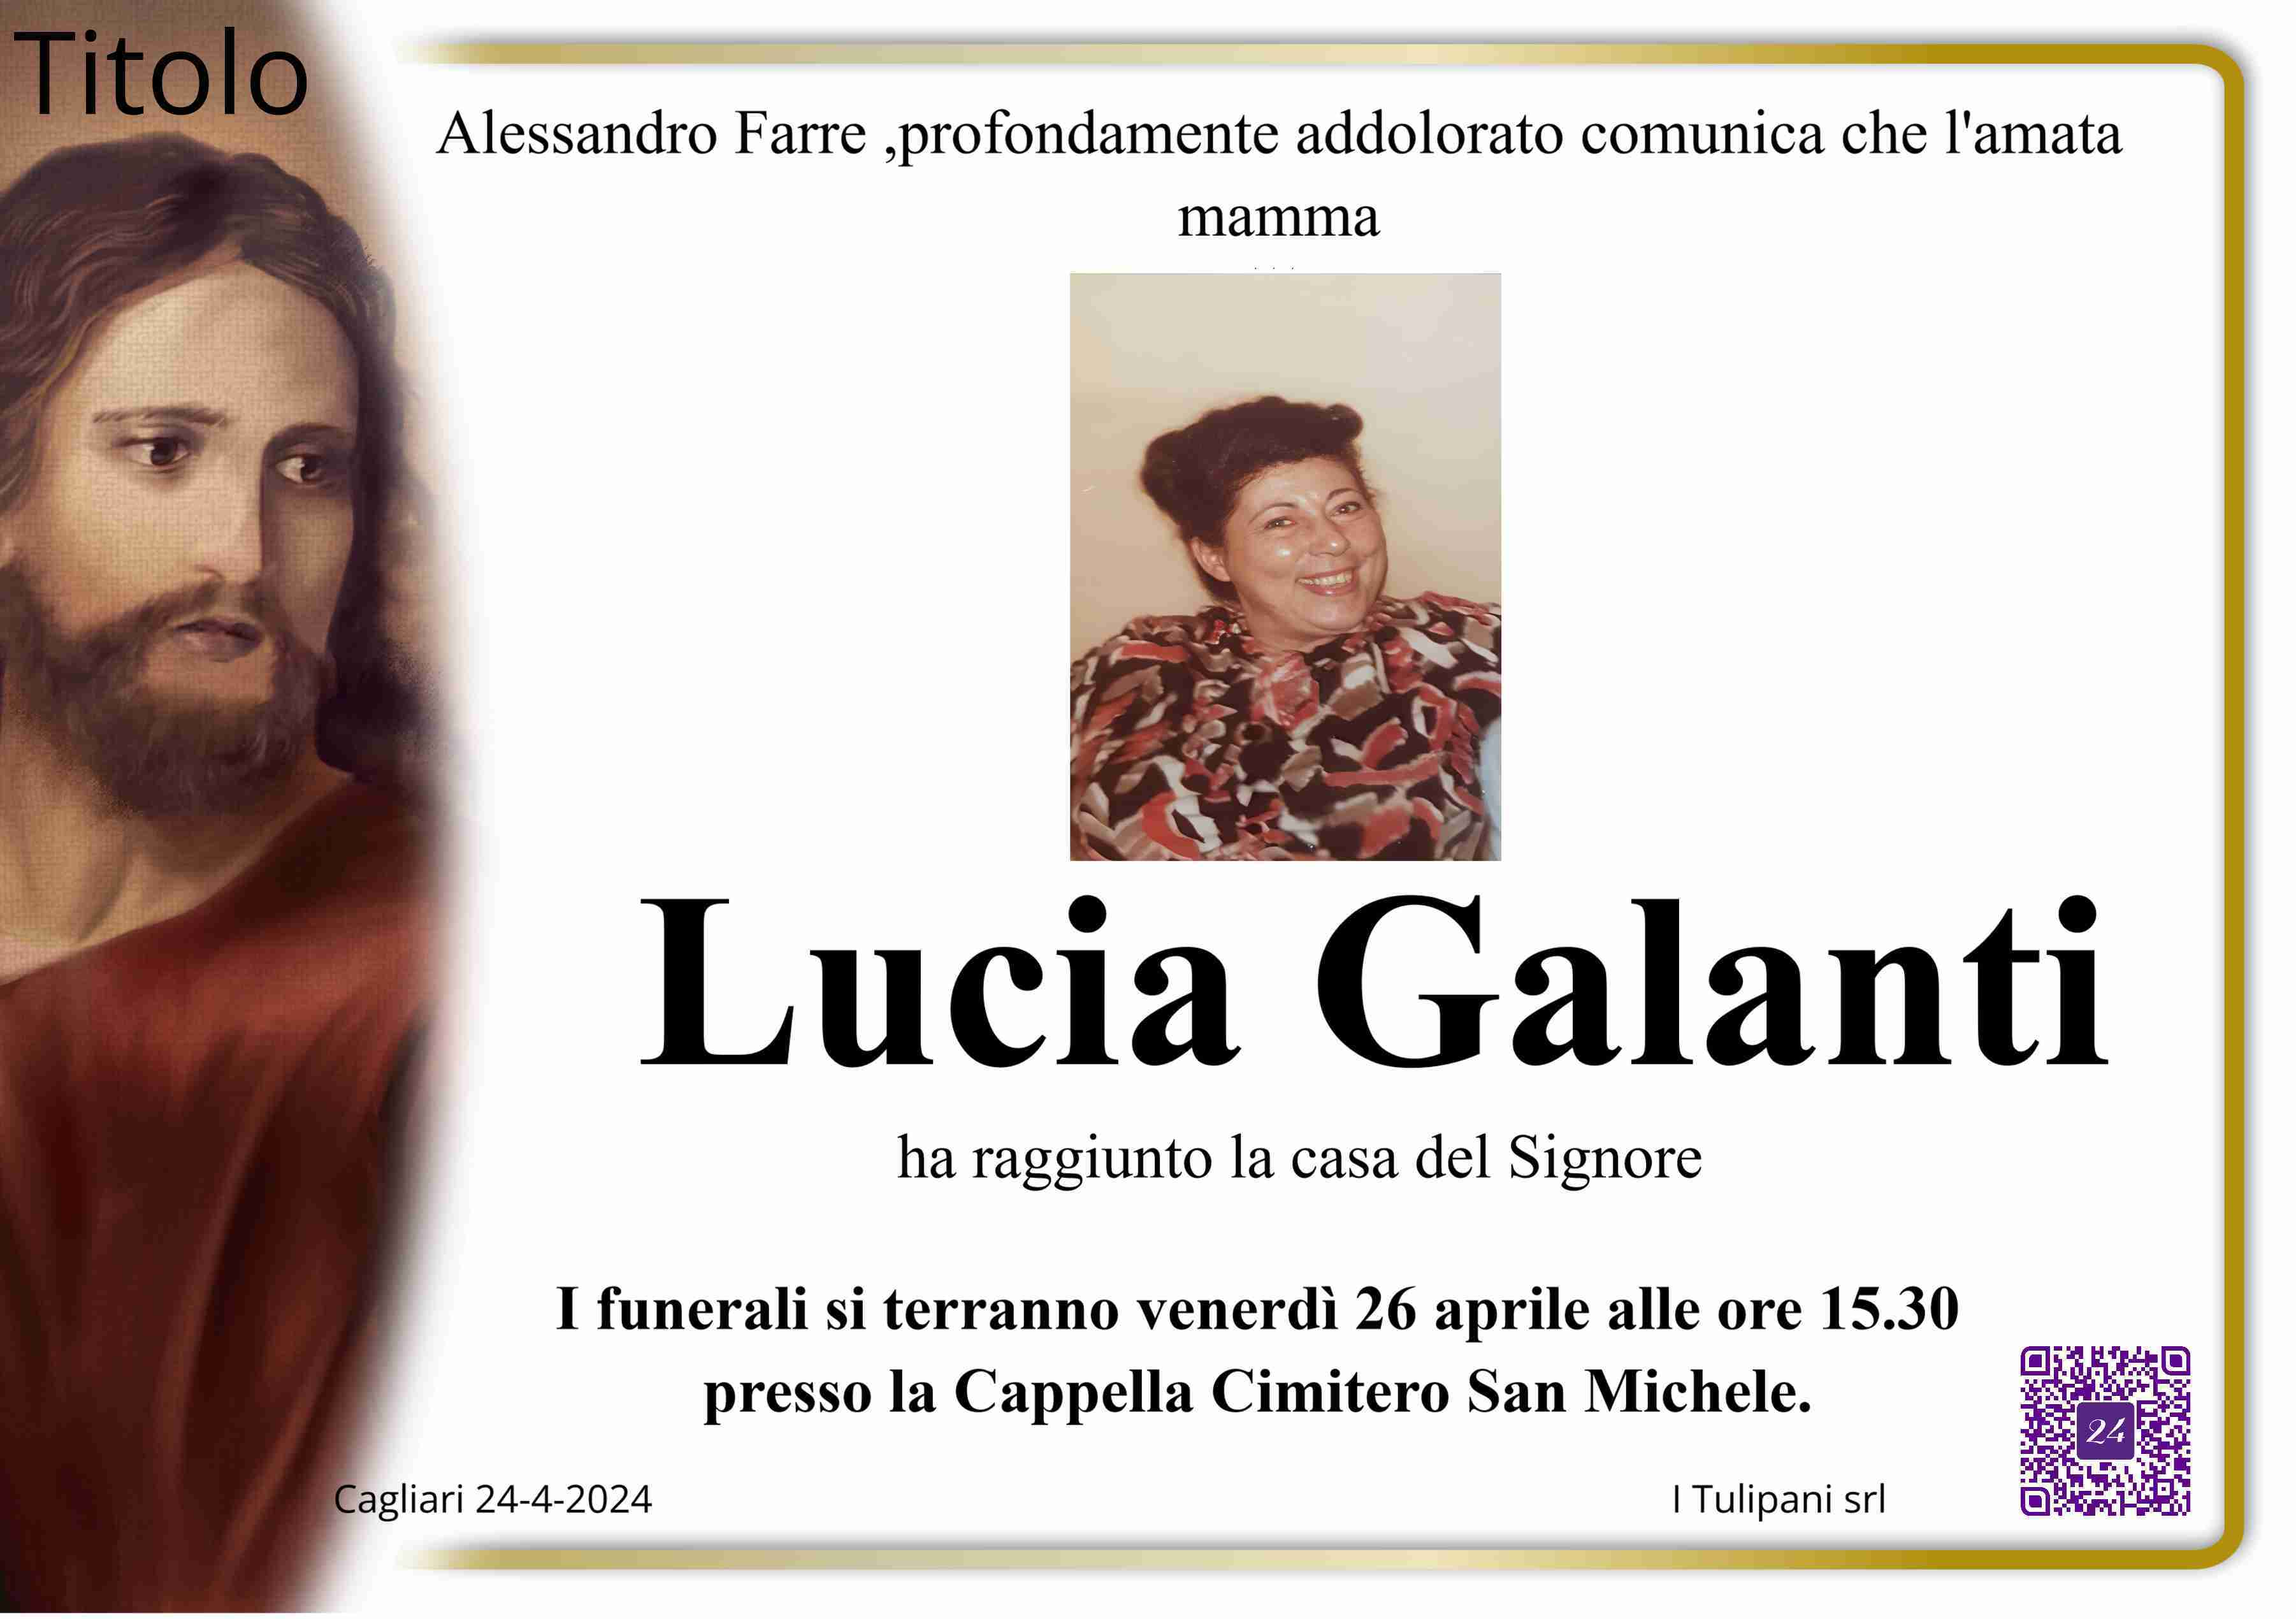 Lucia Galanti